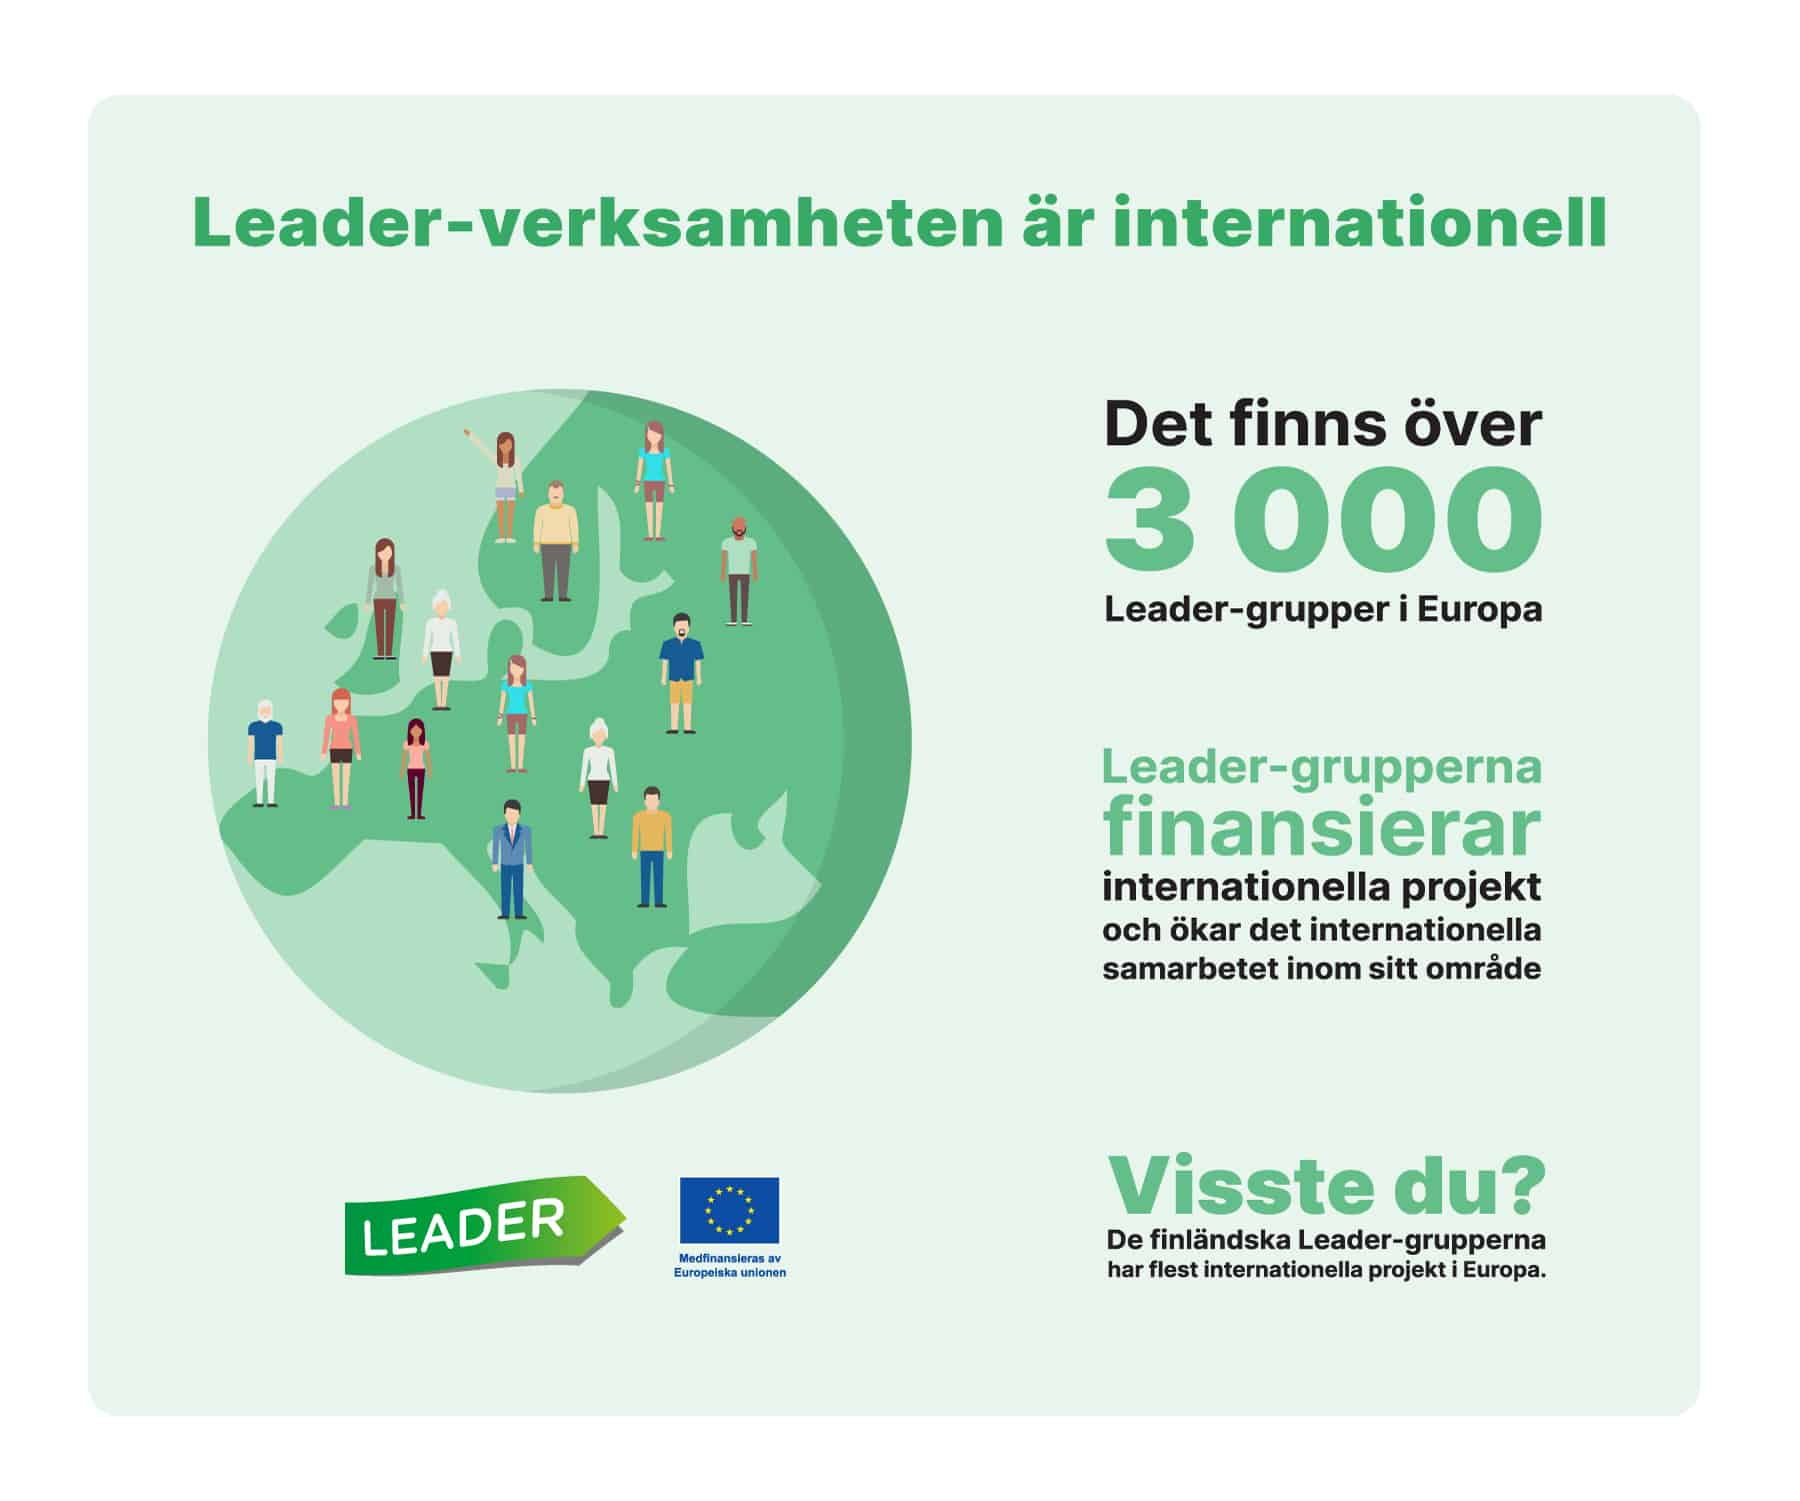 Leader-verksamheten är internationell. Det finns över 3000 Leader-grupper i Europa. Leader-grupperna finansierar internationella projekt och ökar det internationella samarbetet inom sitt område. Visste du? De finländska Leader-grupperna har flest internationella projekt i Europa.